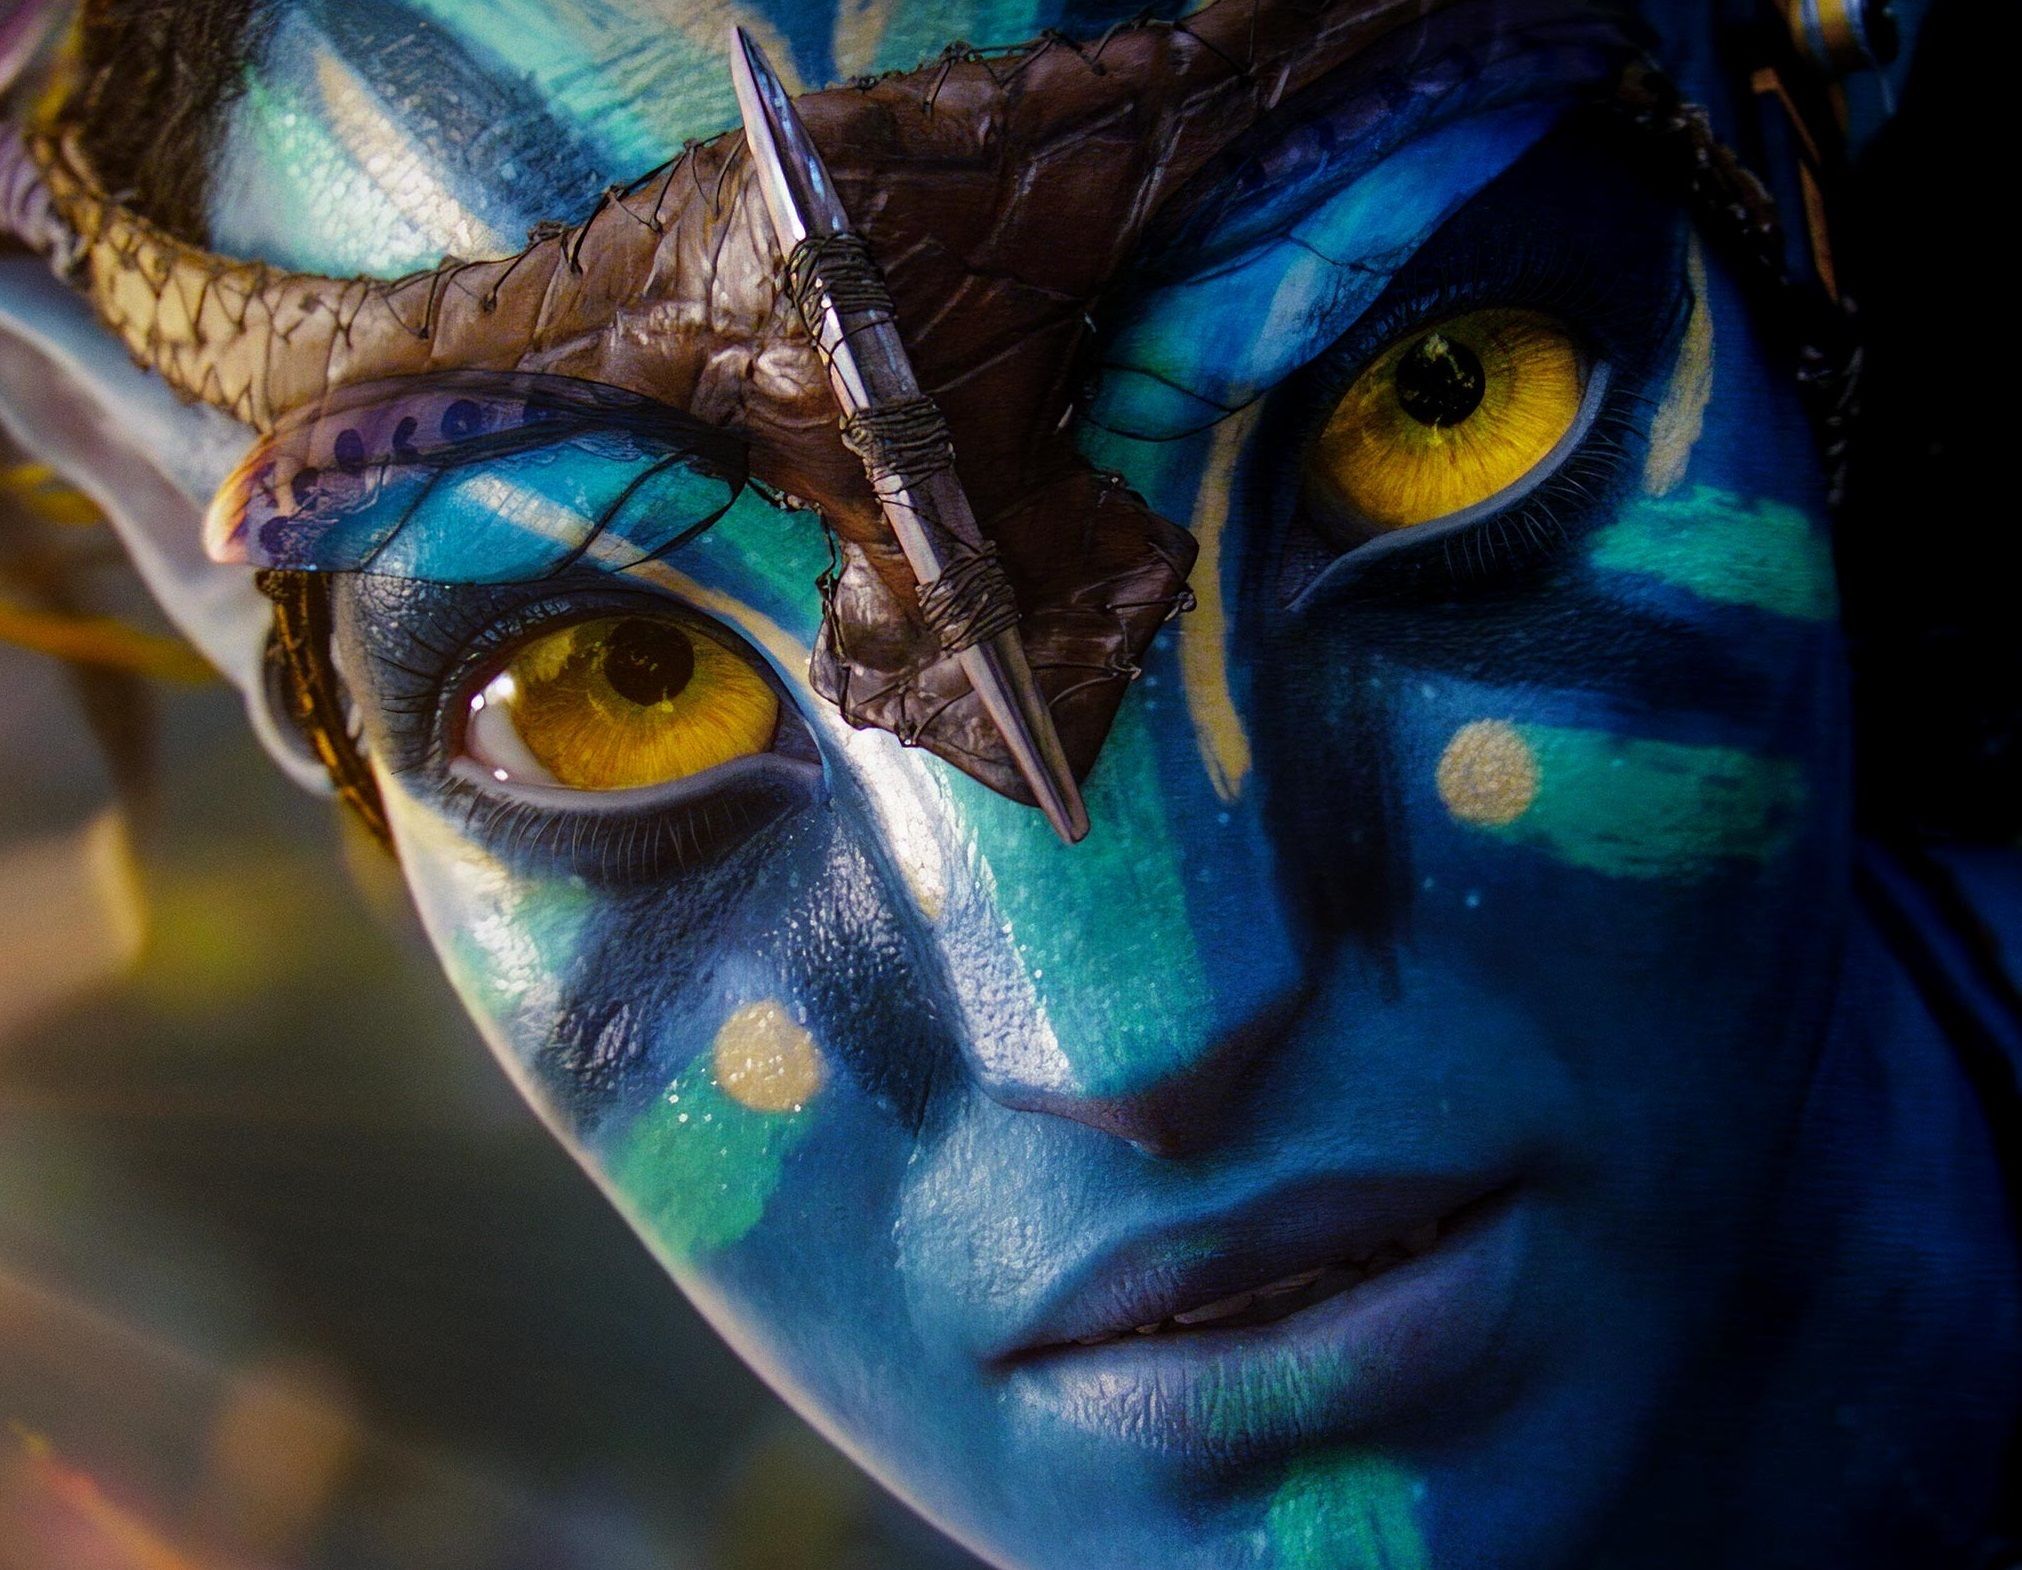 James Cameron sobre la secuela de Avatar: "Hay que hacer cosas que los espectadores no se esperan"